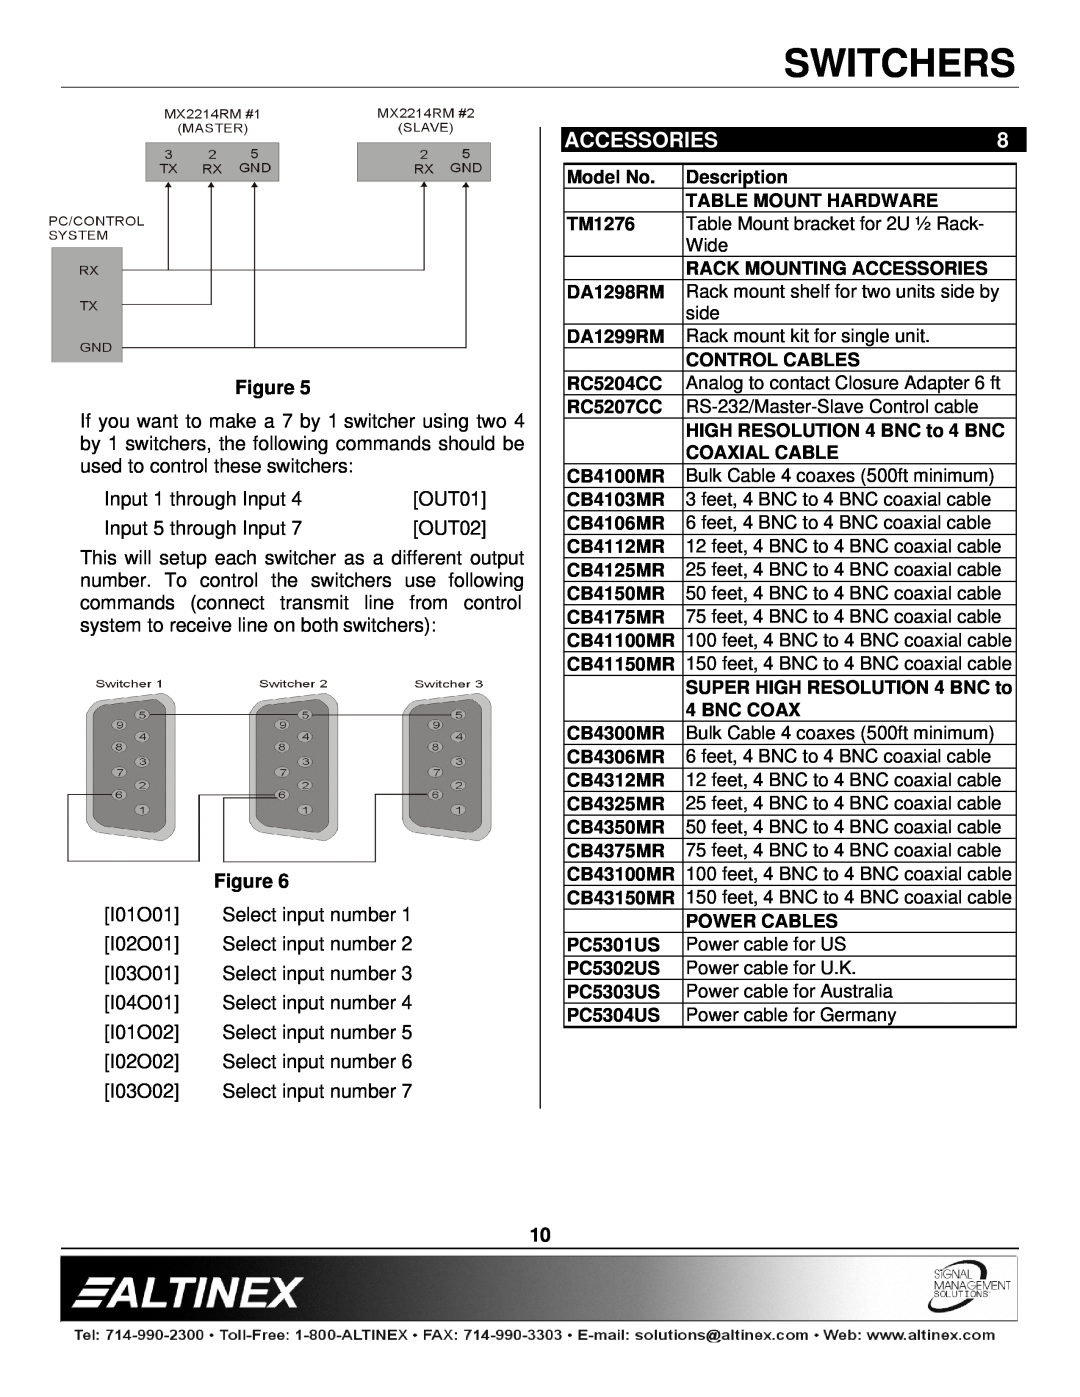 Altinex MX2214RM manual Accessories, Switchers 